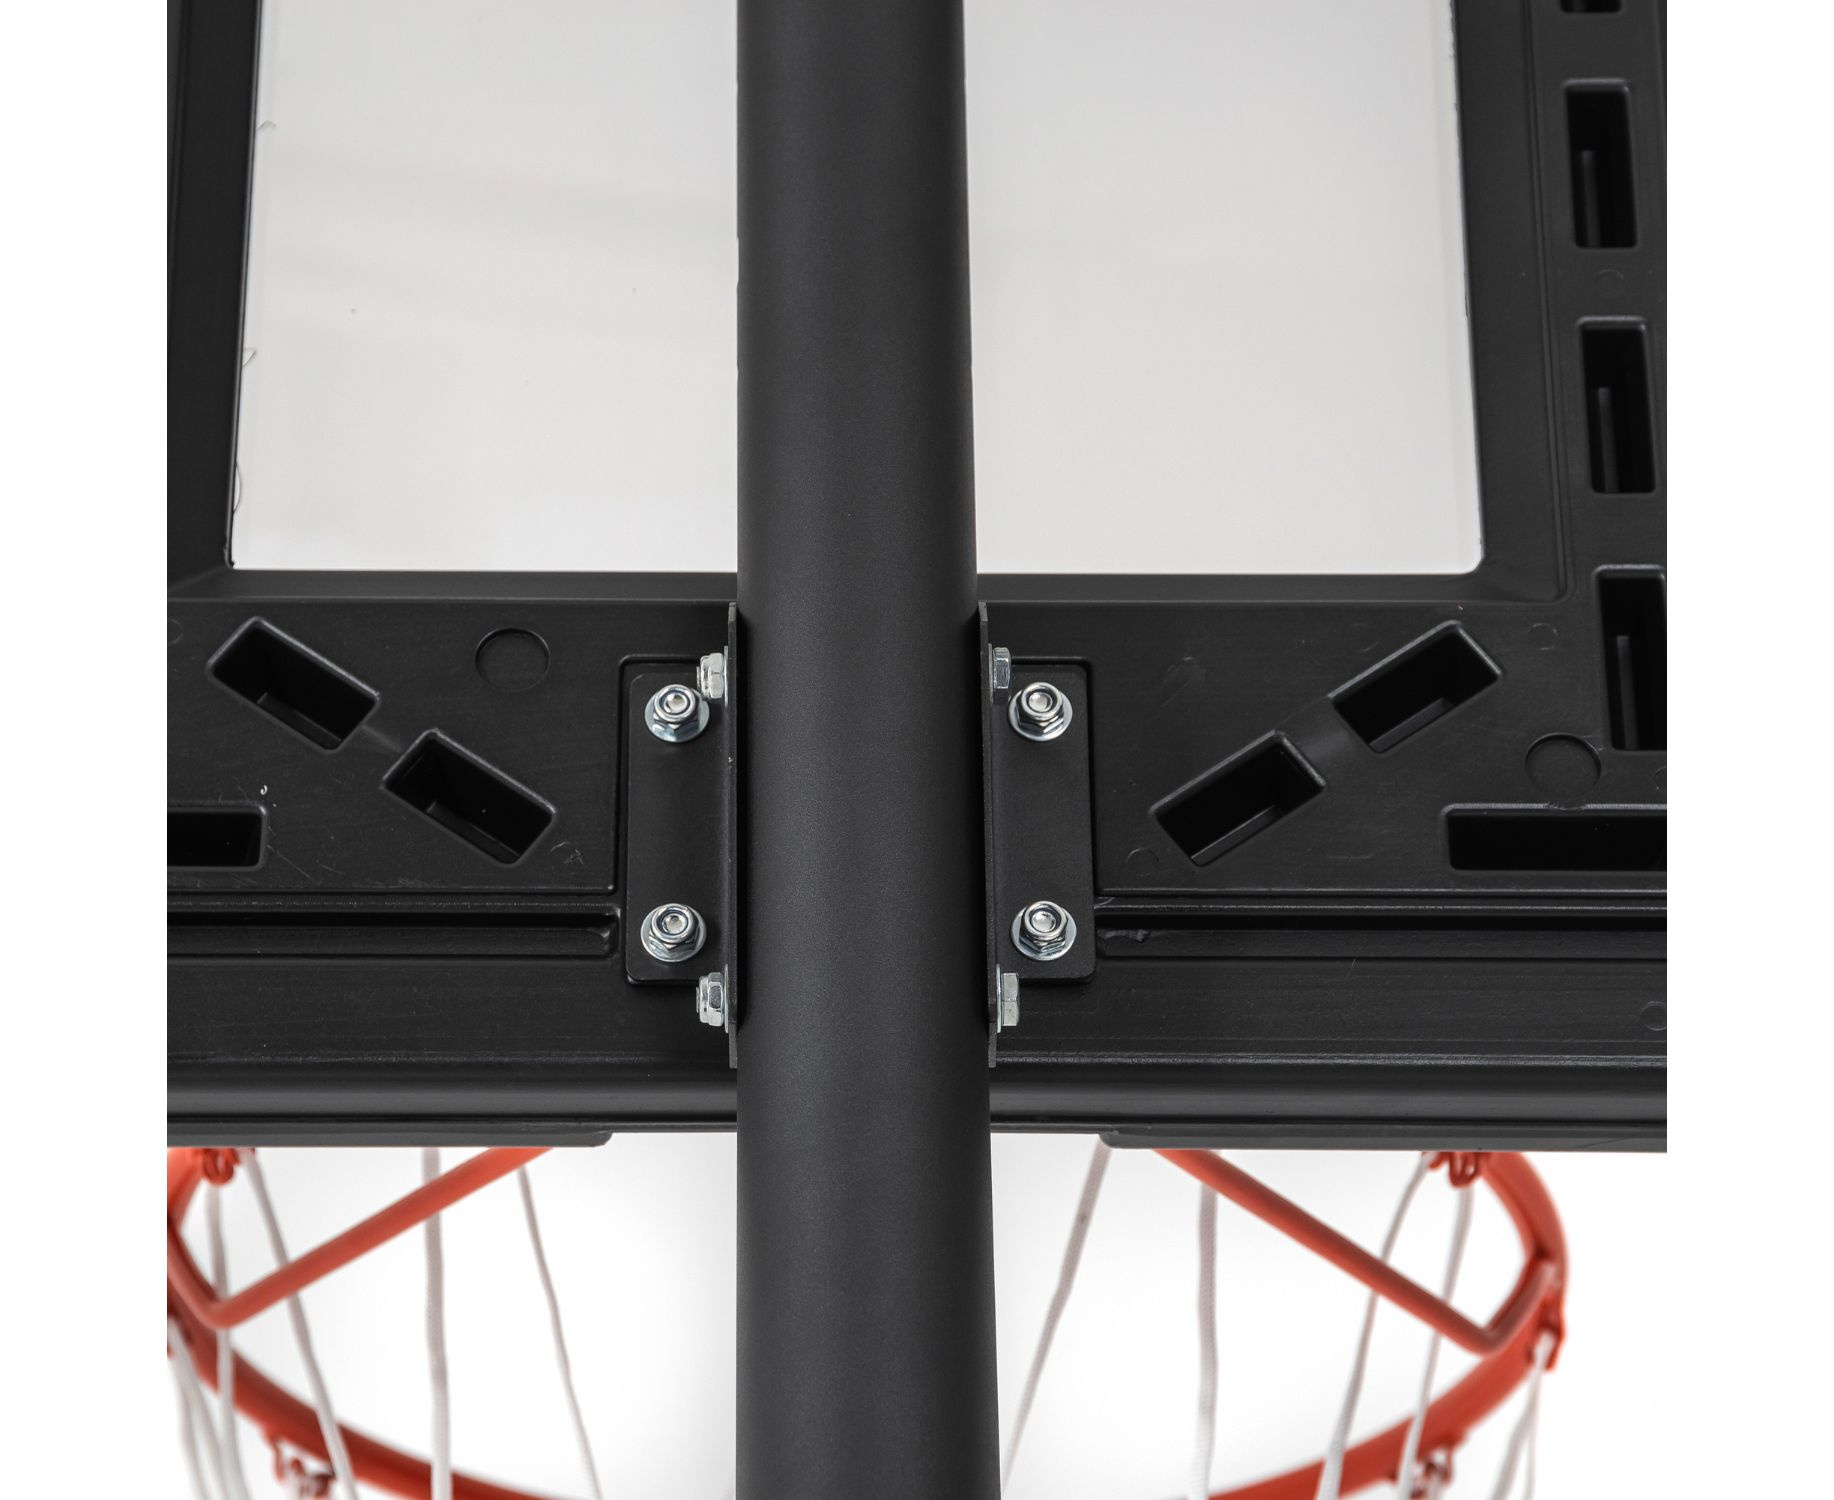 Мобильная баскетбольная стойка DFC STAND44A003 — 44″